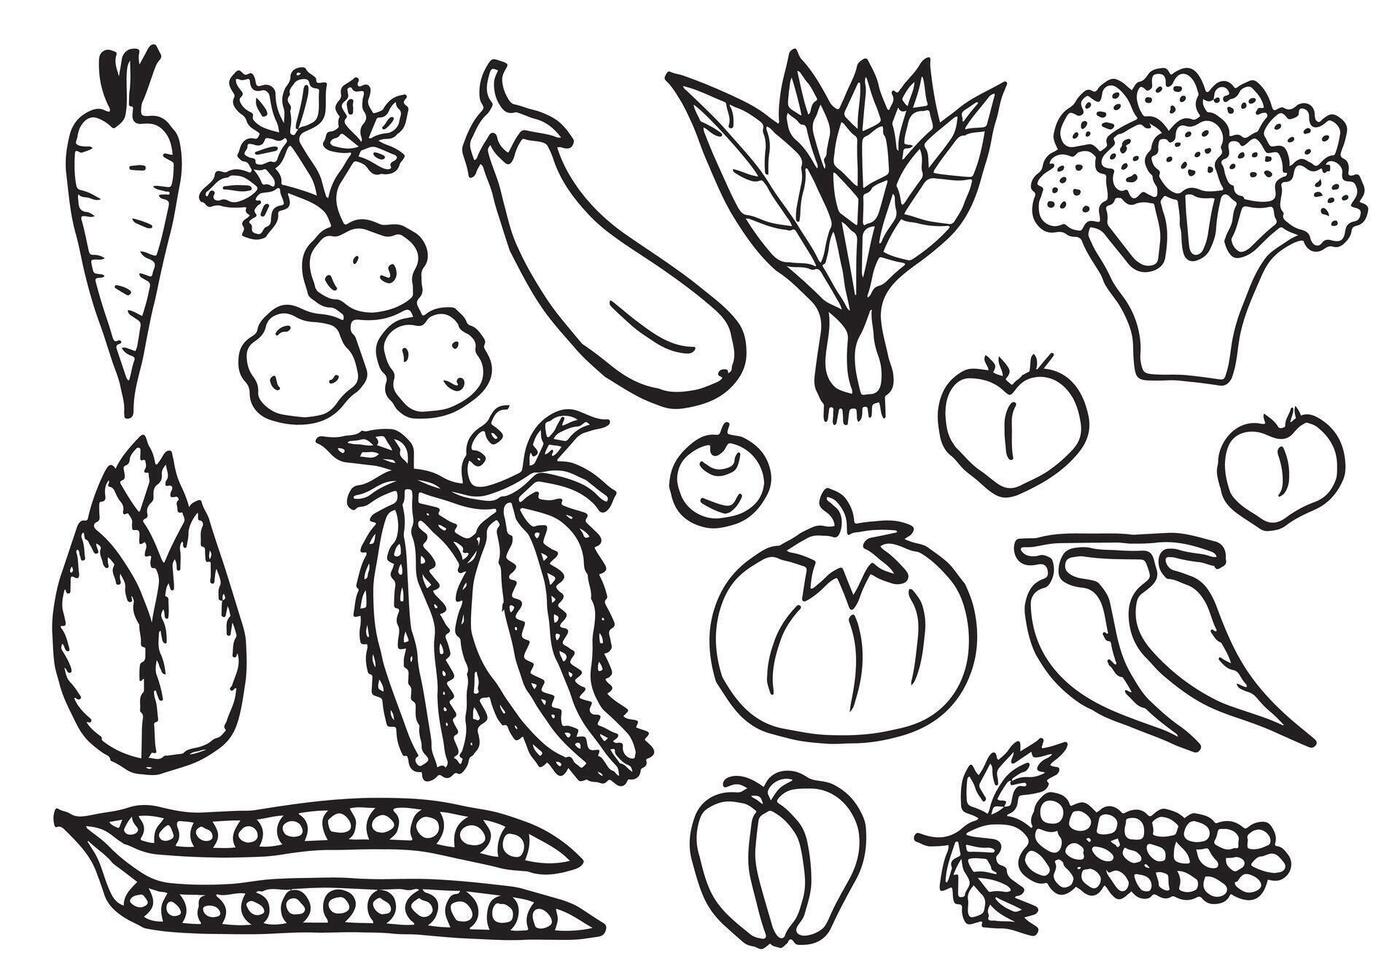 klotter grönsaker. vektor skiss illustration av hälsosam mat.